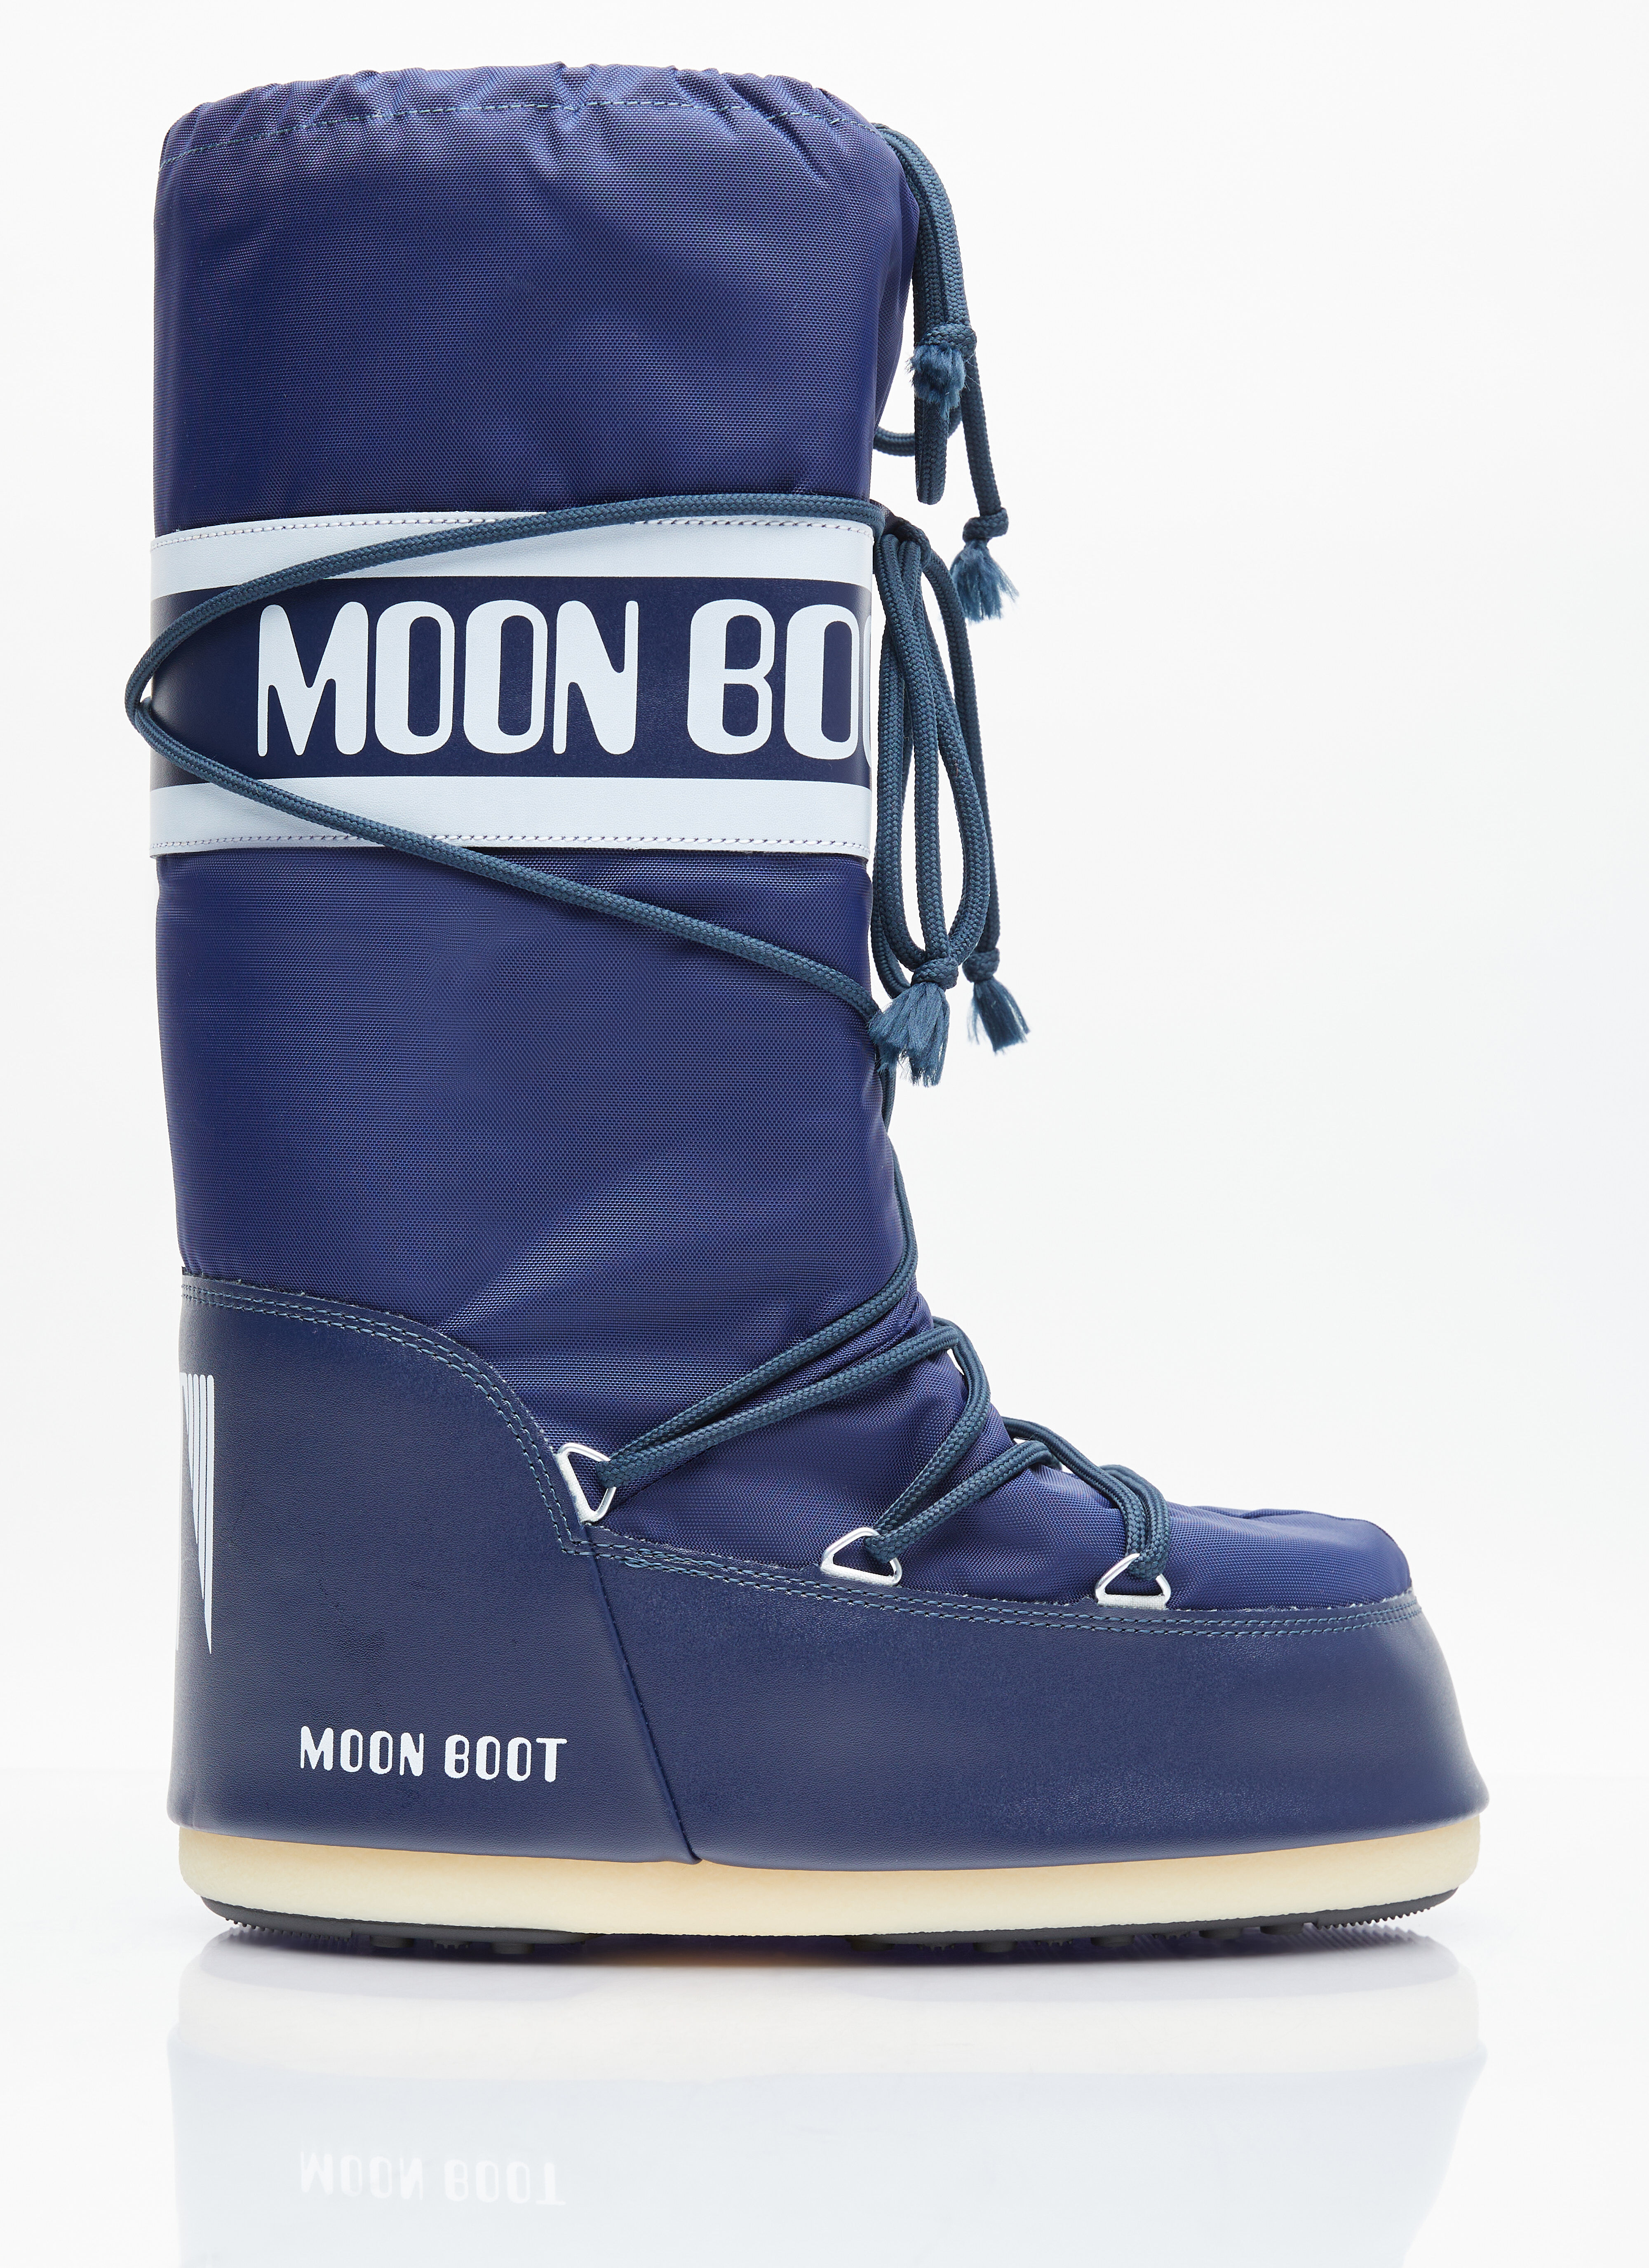 Moon Boot アイコンナイロンブーツ ブラック mnb0355001